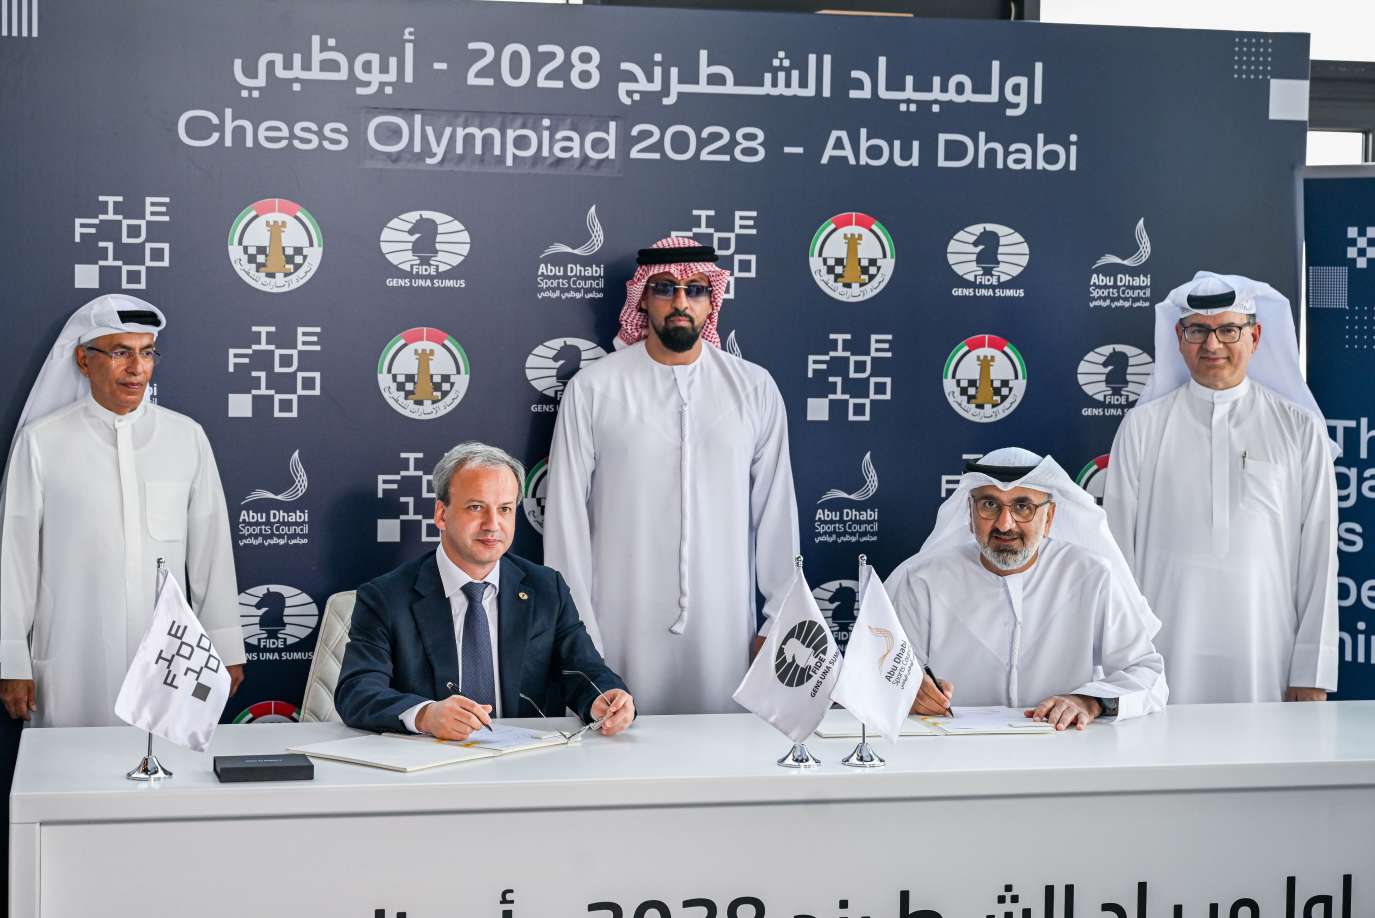 阿布扎比赢得 2028 年国际象棋奥林匹克竞赛主办权